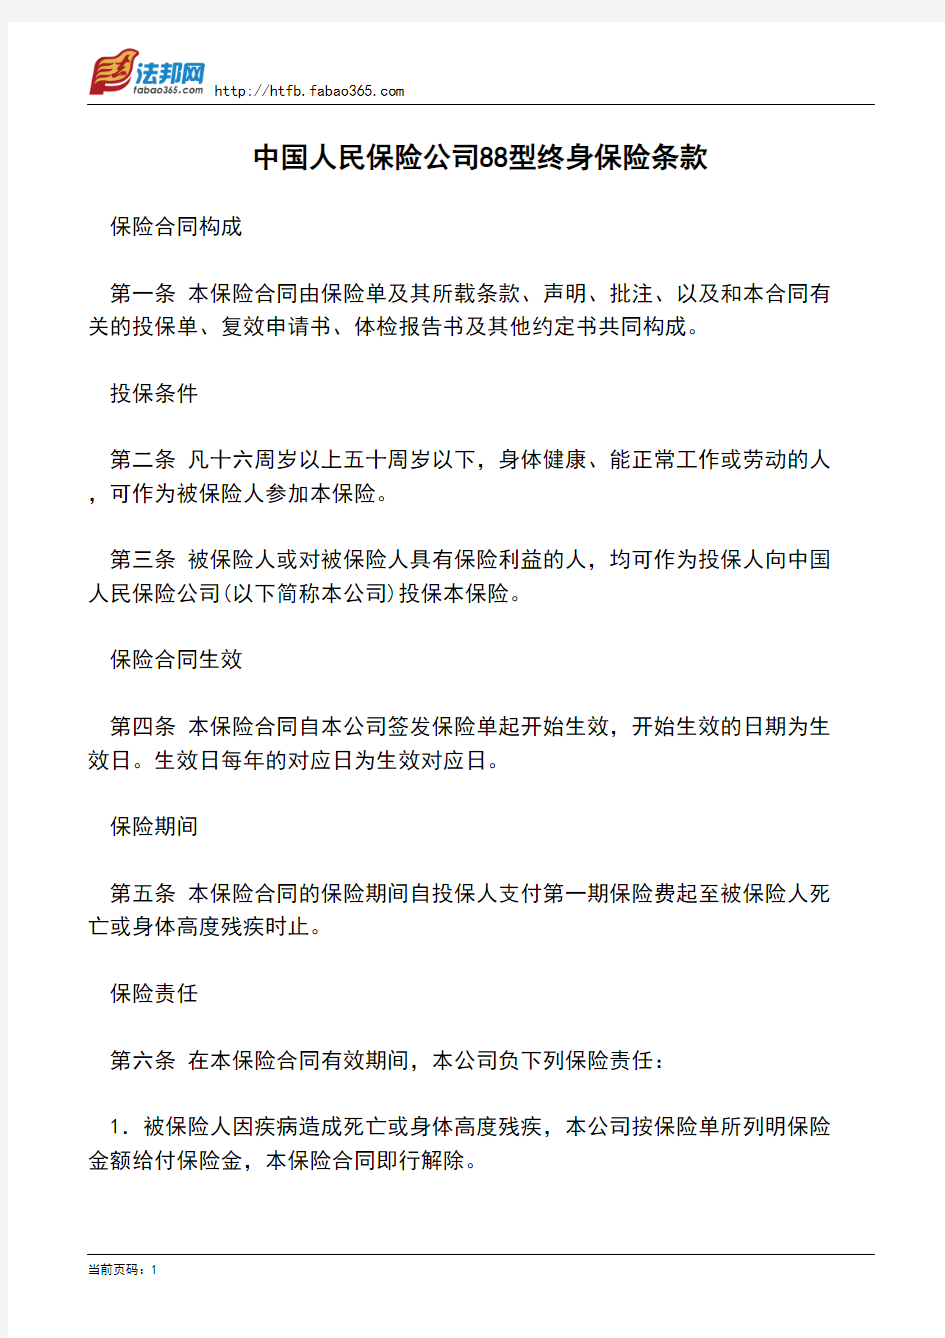 中国人民保险公司88型终身保险条款